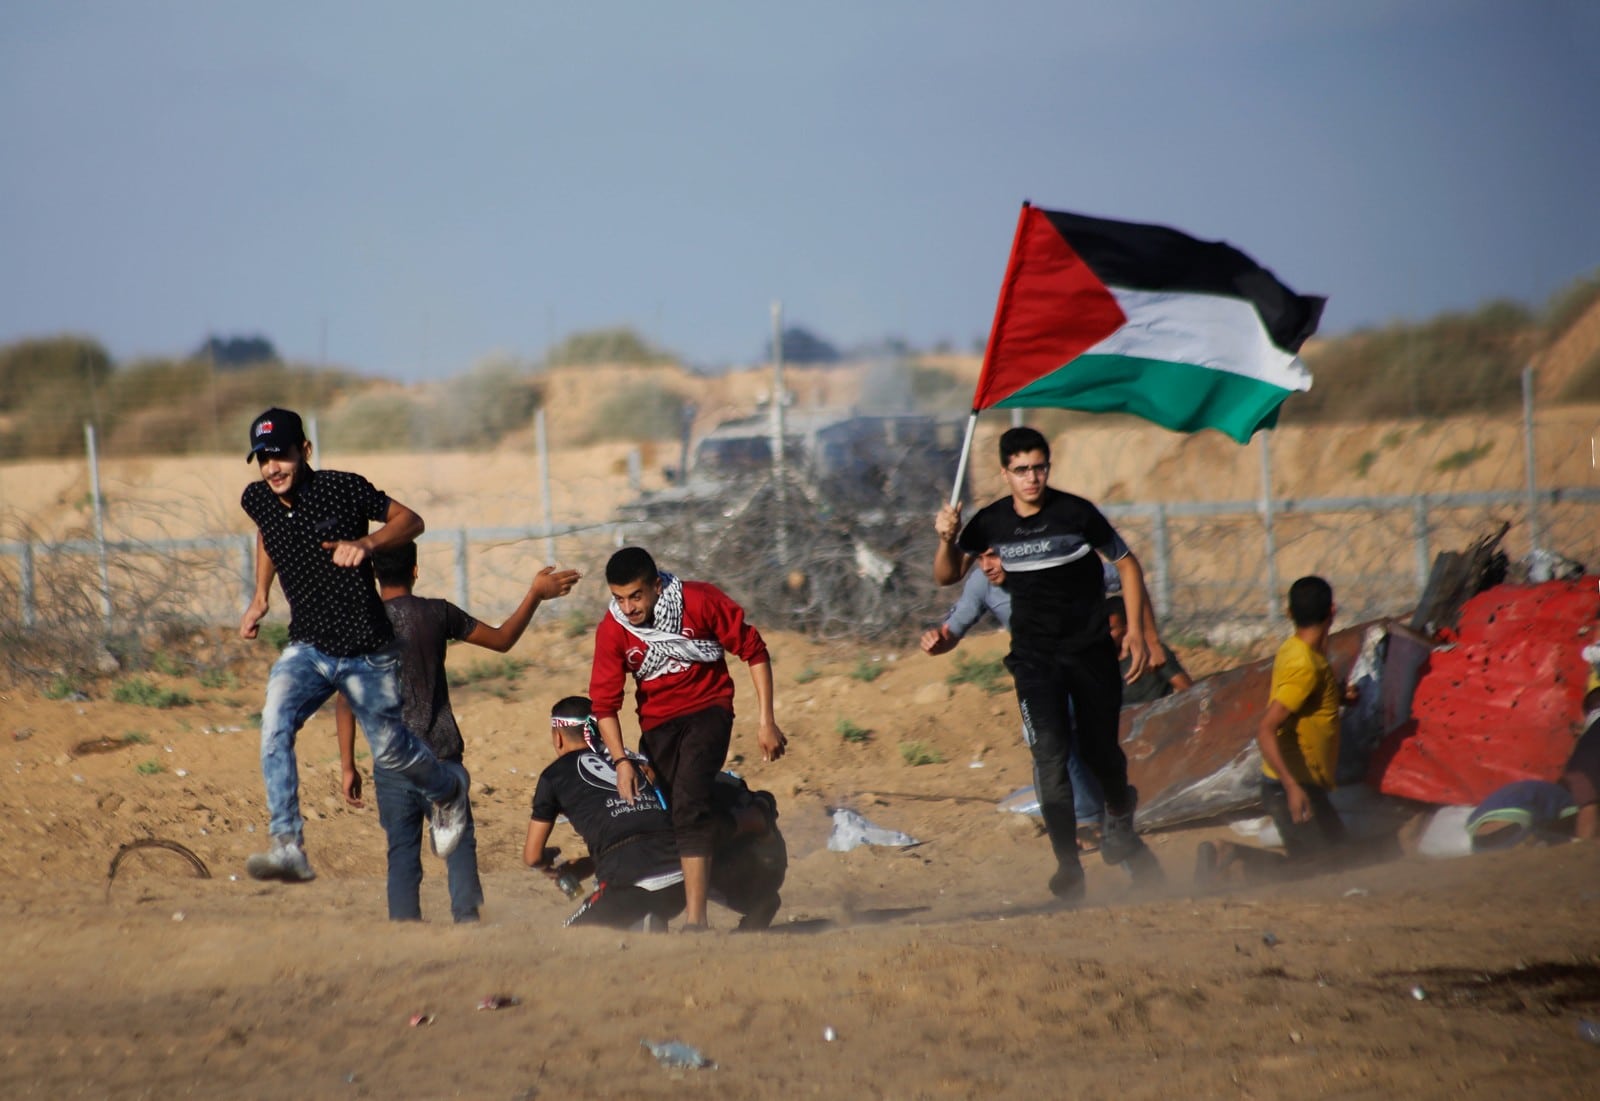 Manifestations palestiniennes à la frontière entre Gaza et Israël, en octobre 2019,
Auteurs  : Yousef Masoud/Penta Press/REX/SIPA,
Numéro de reportage  : Shutterstock40731803_000006.